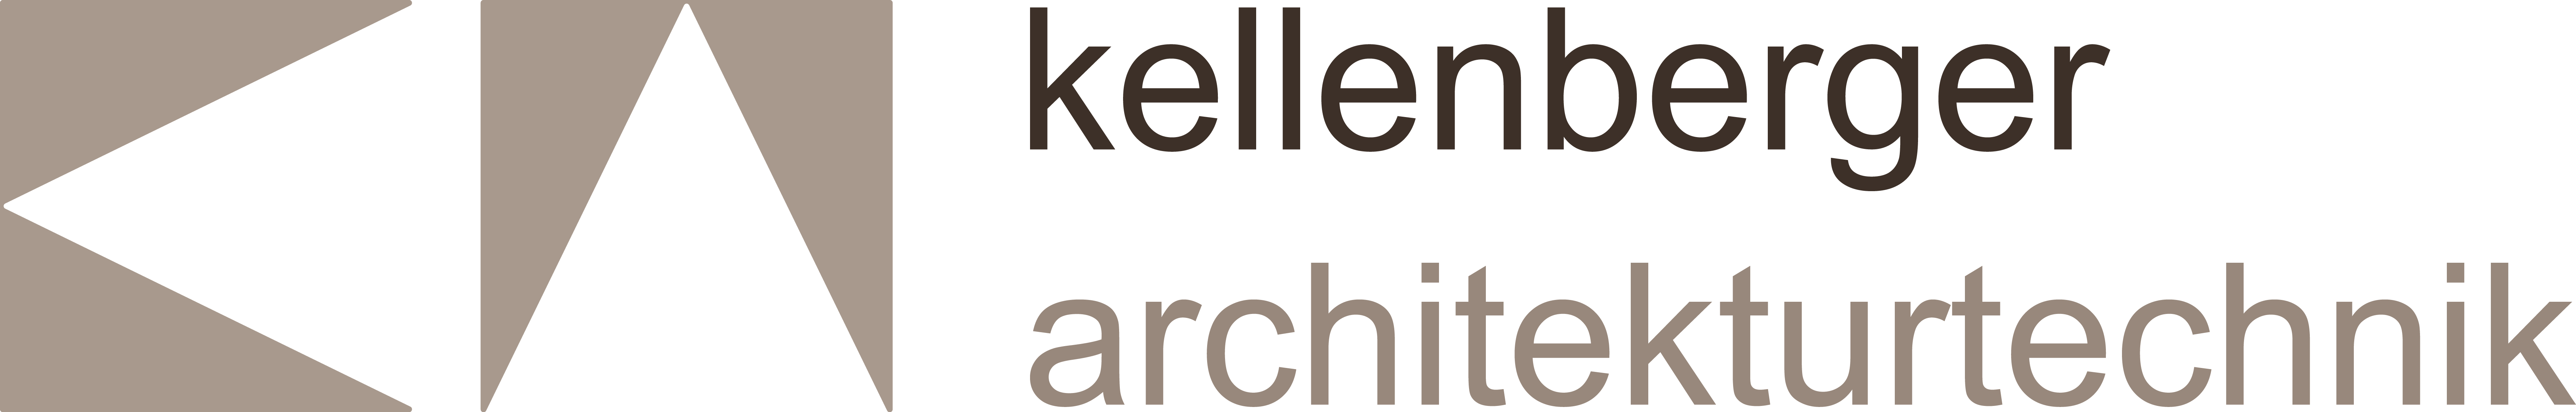 Kellenberger Architekturtechnik  